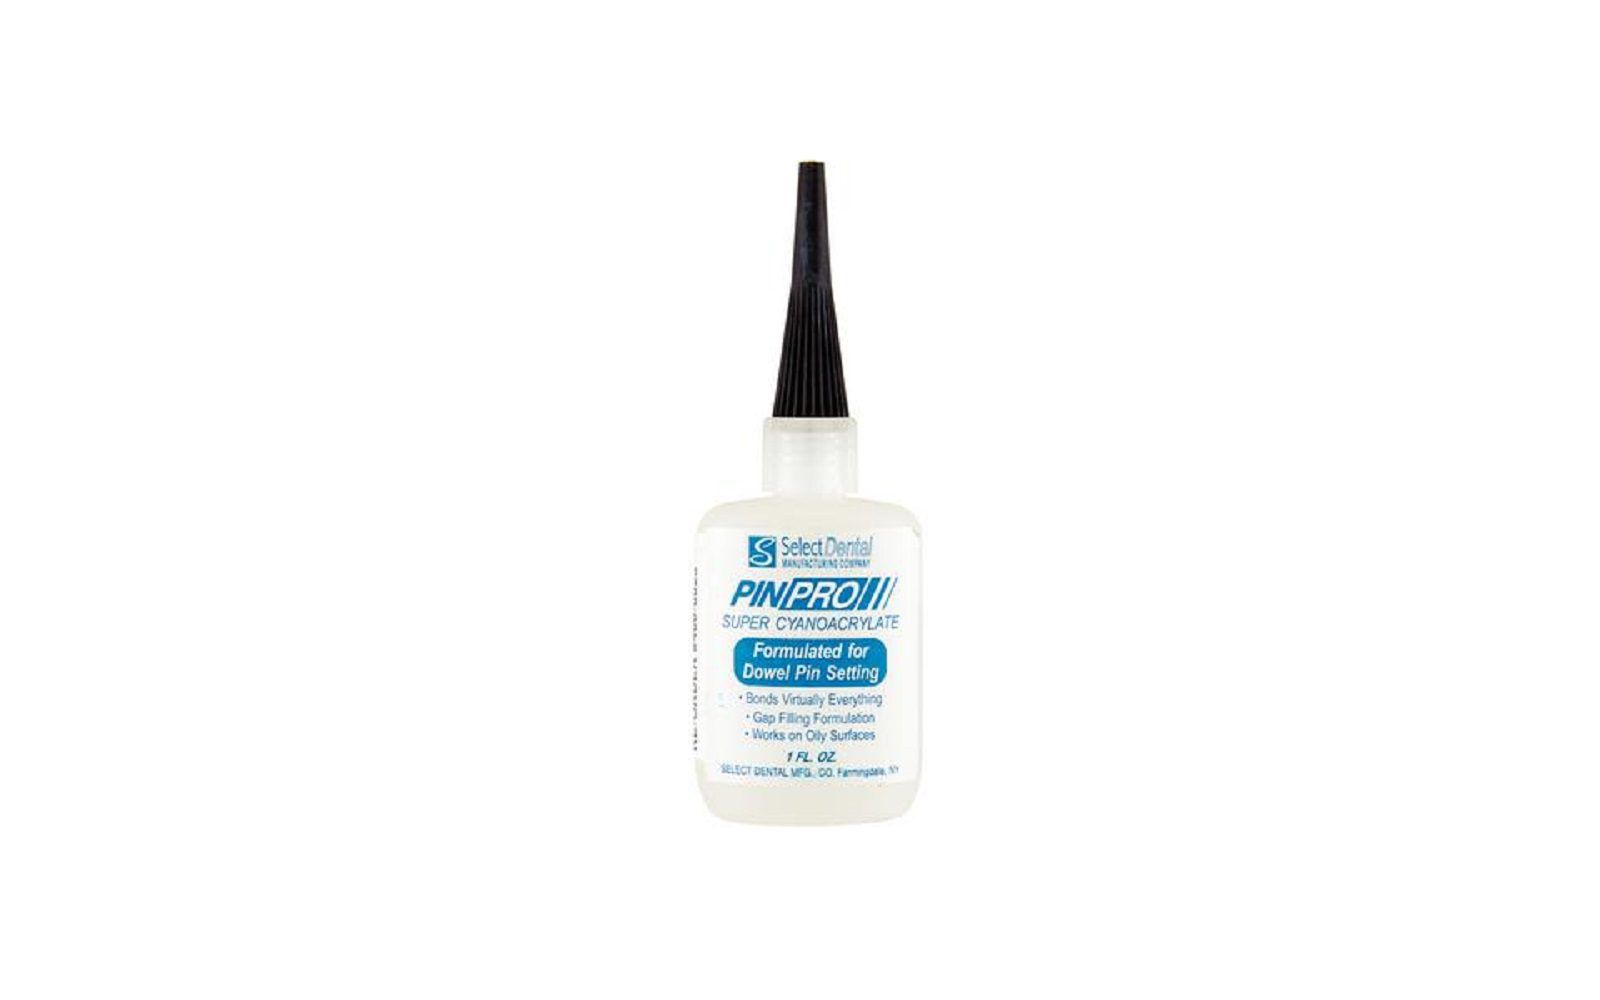 Pinpro cyanoacrylate adhesive – 1 oz bottle